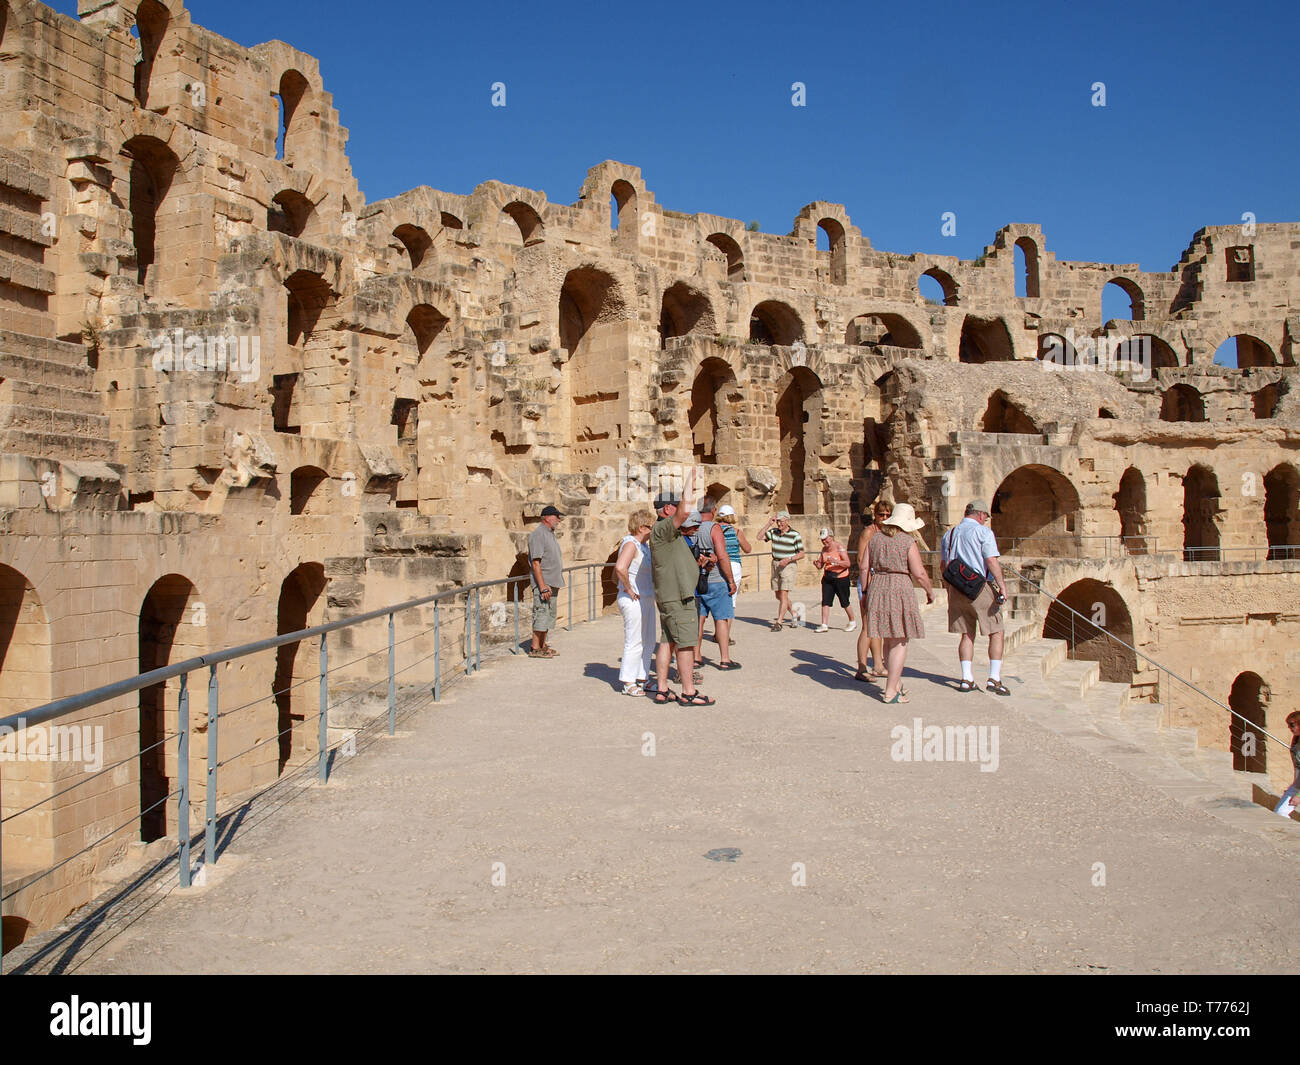 El Djem, Mahdia, Tunisie - 16.05.2012 ancien amphithéâtre romain d'El Jem en Tunisie, photo horizontale Banque D'Images